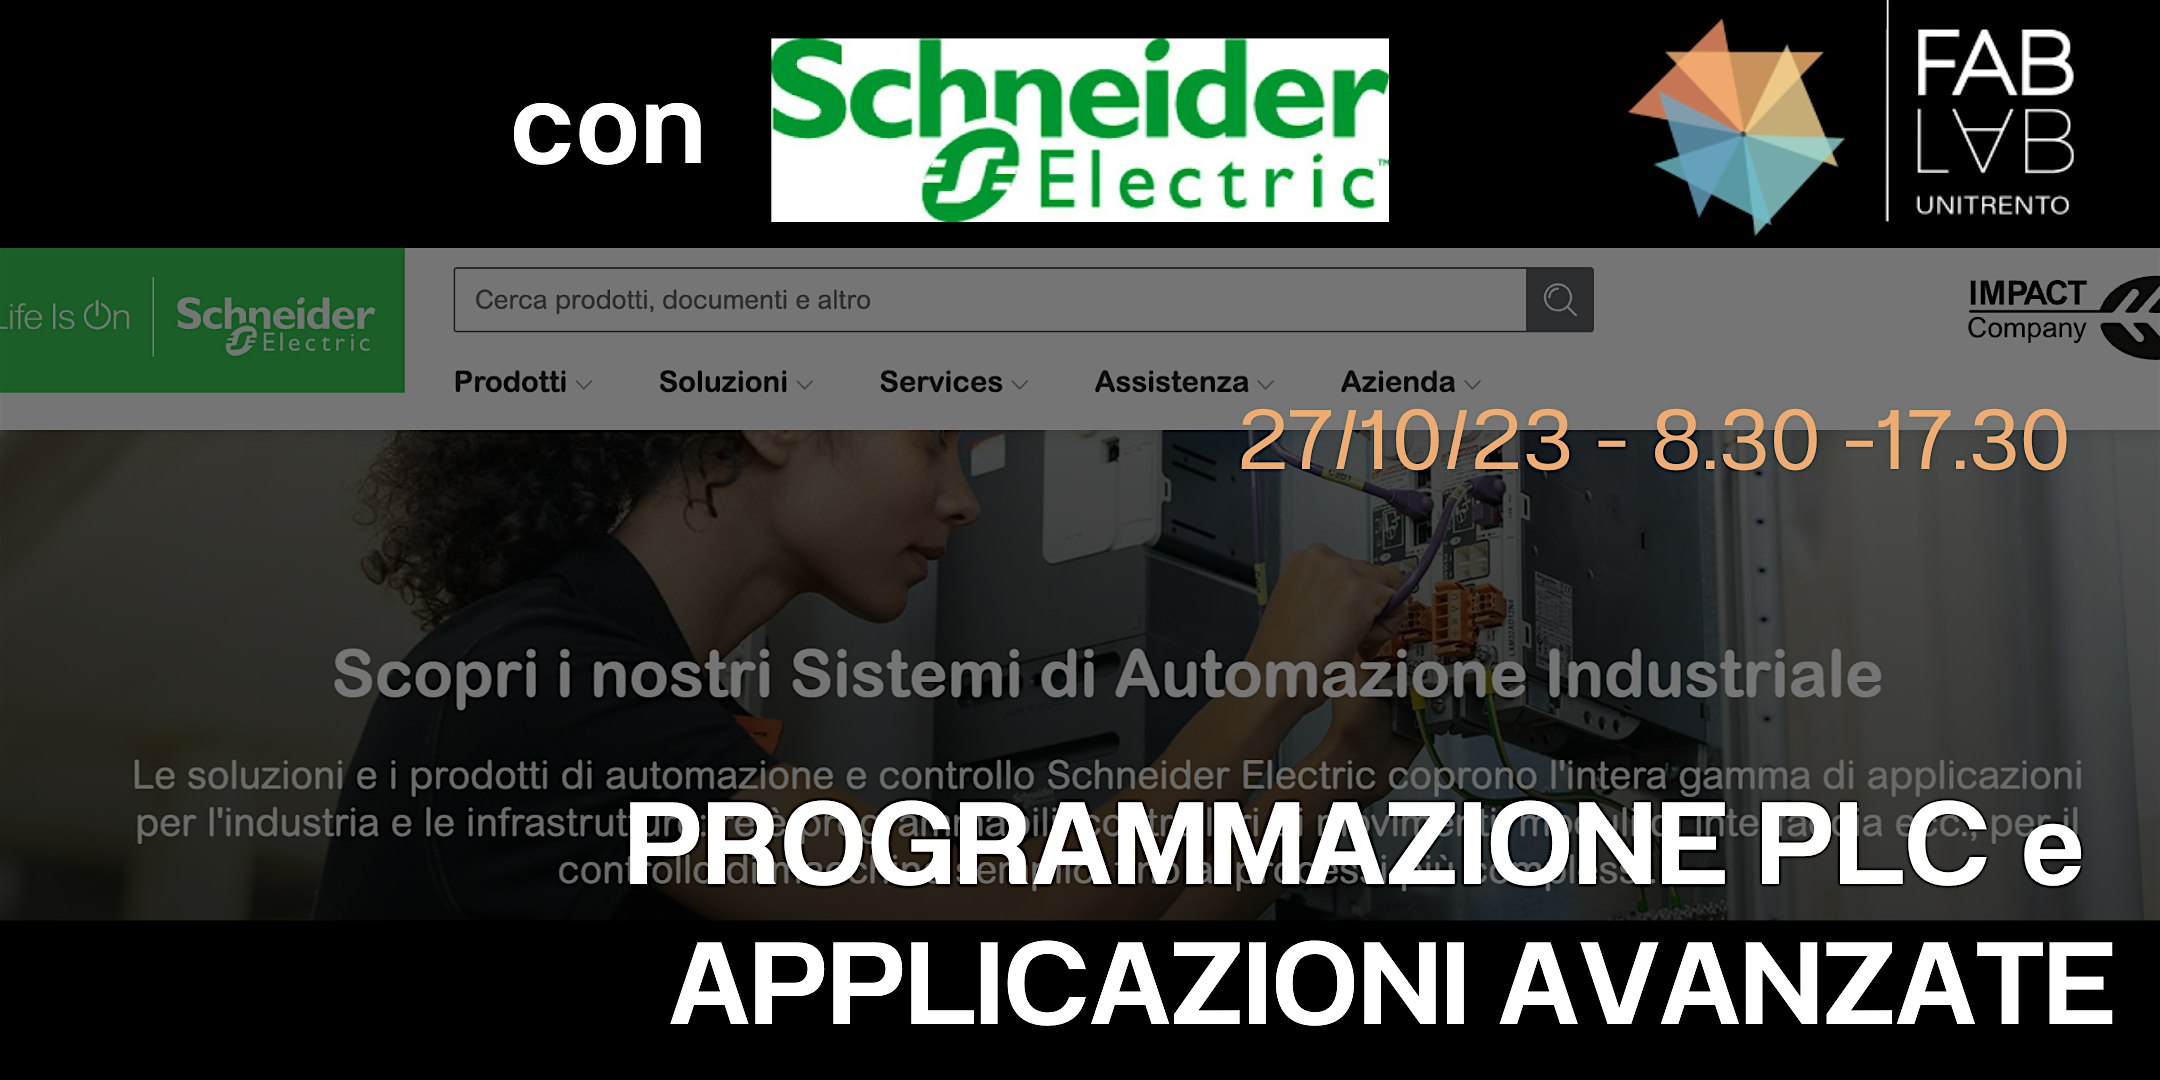 Programmazione PLC (Schneider Electric) e Applicazioni Avanzate